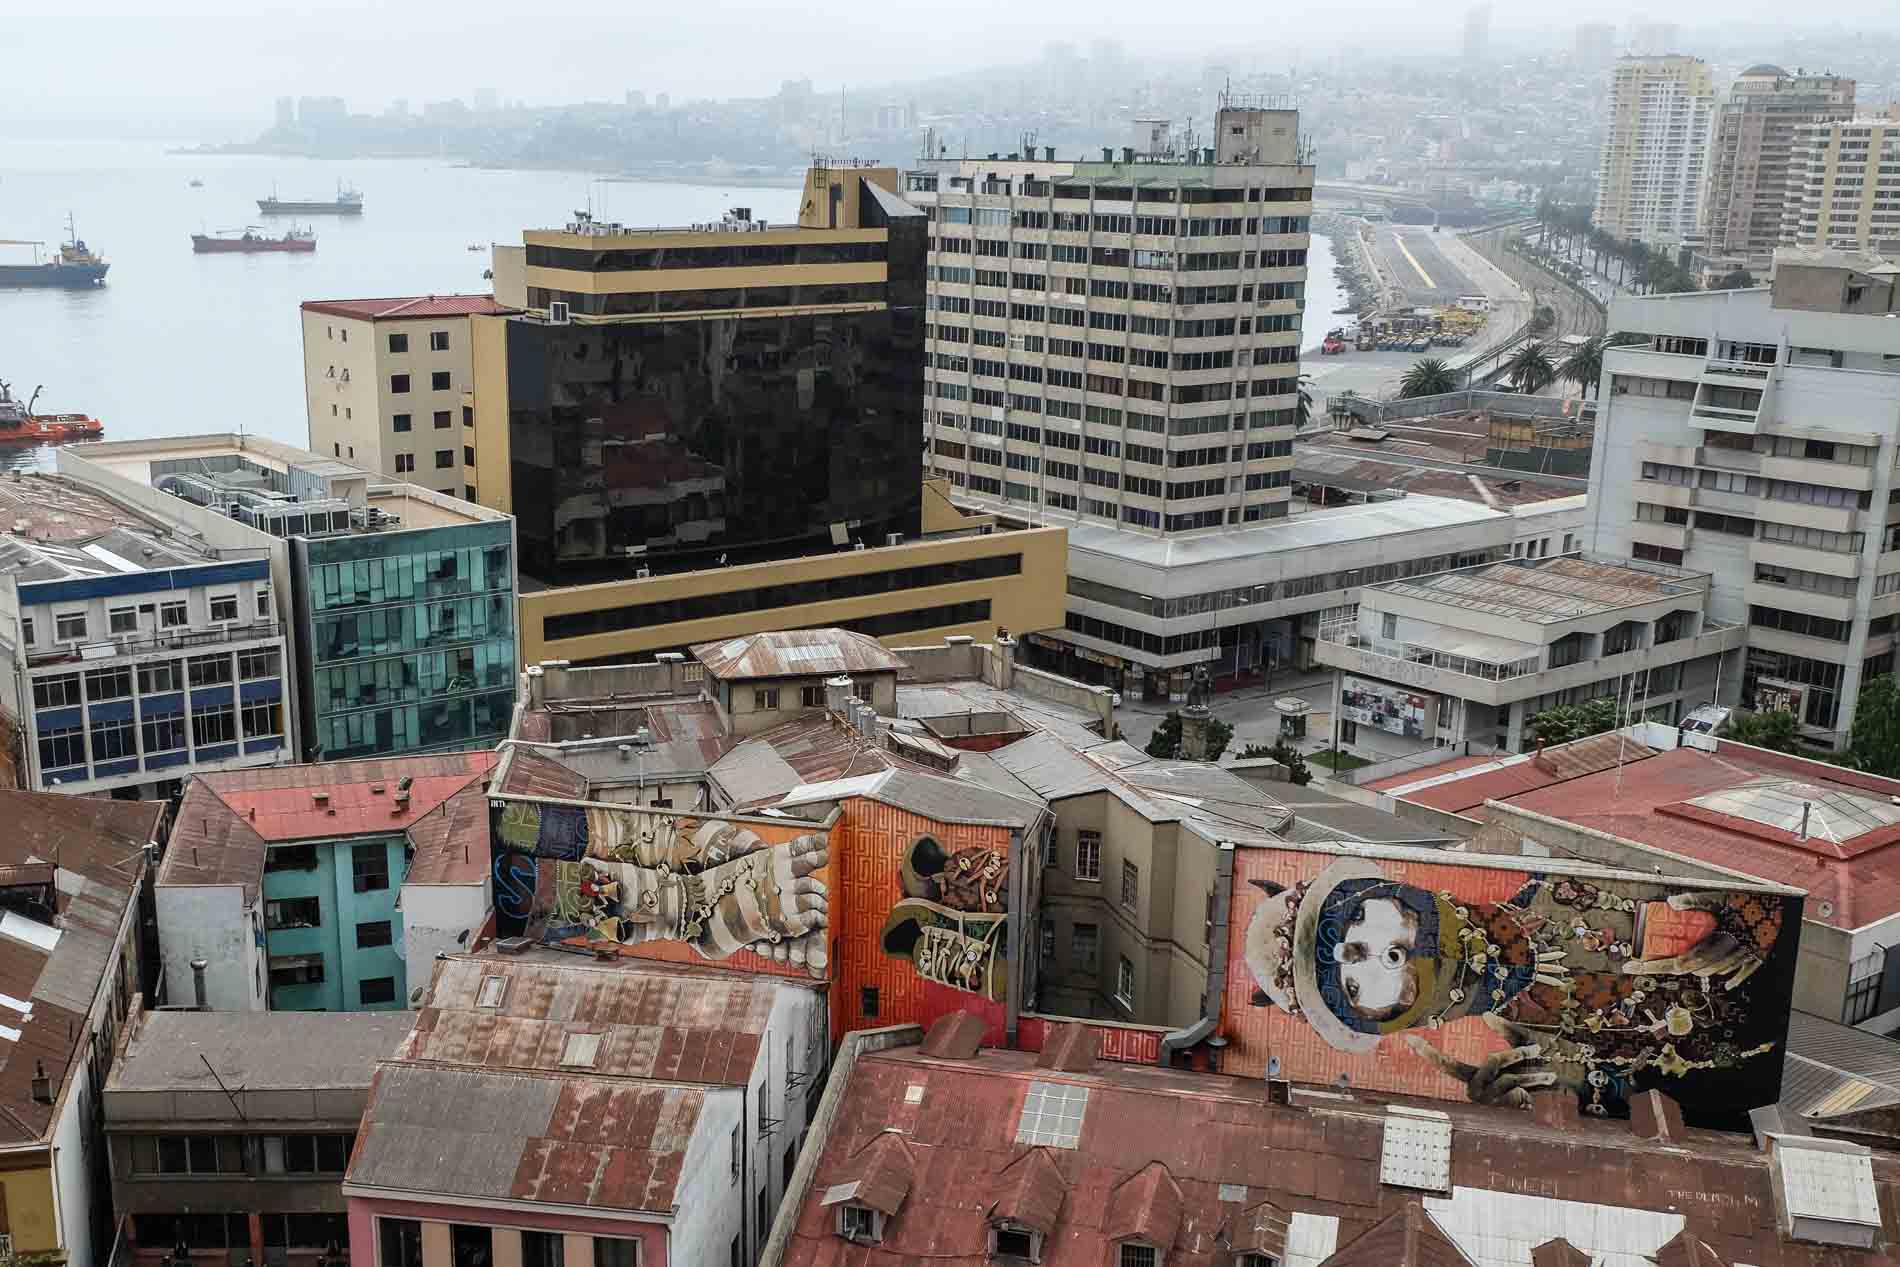 An diesem Graffiti wurde über 3 Monate lang gearbeitet - Die Künster haben Aufträge rund um die Welt.